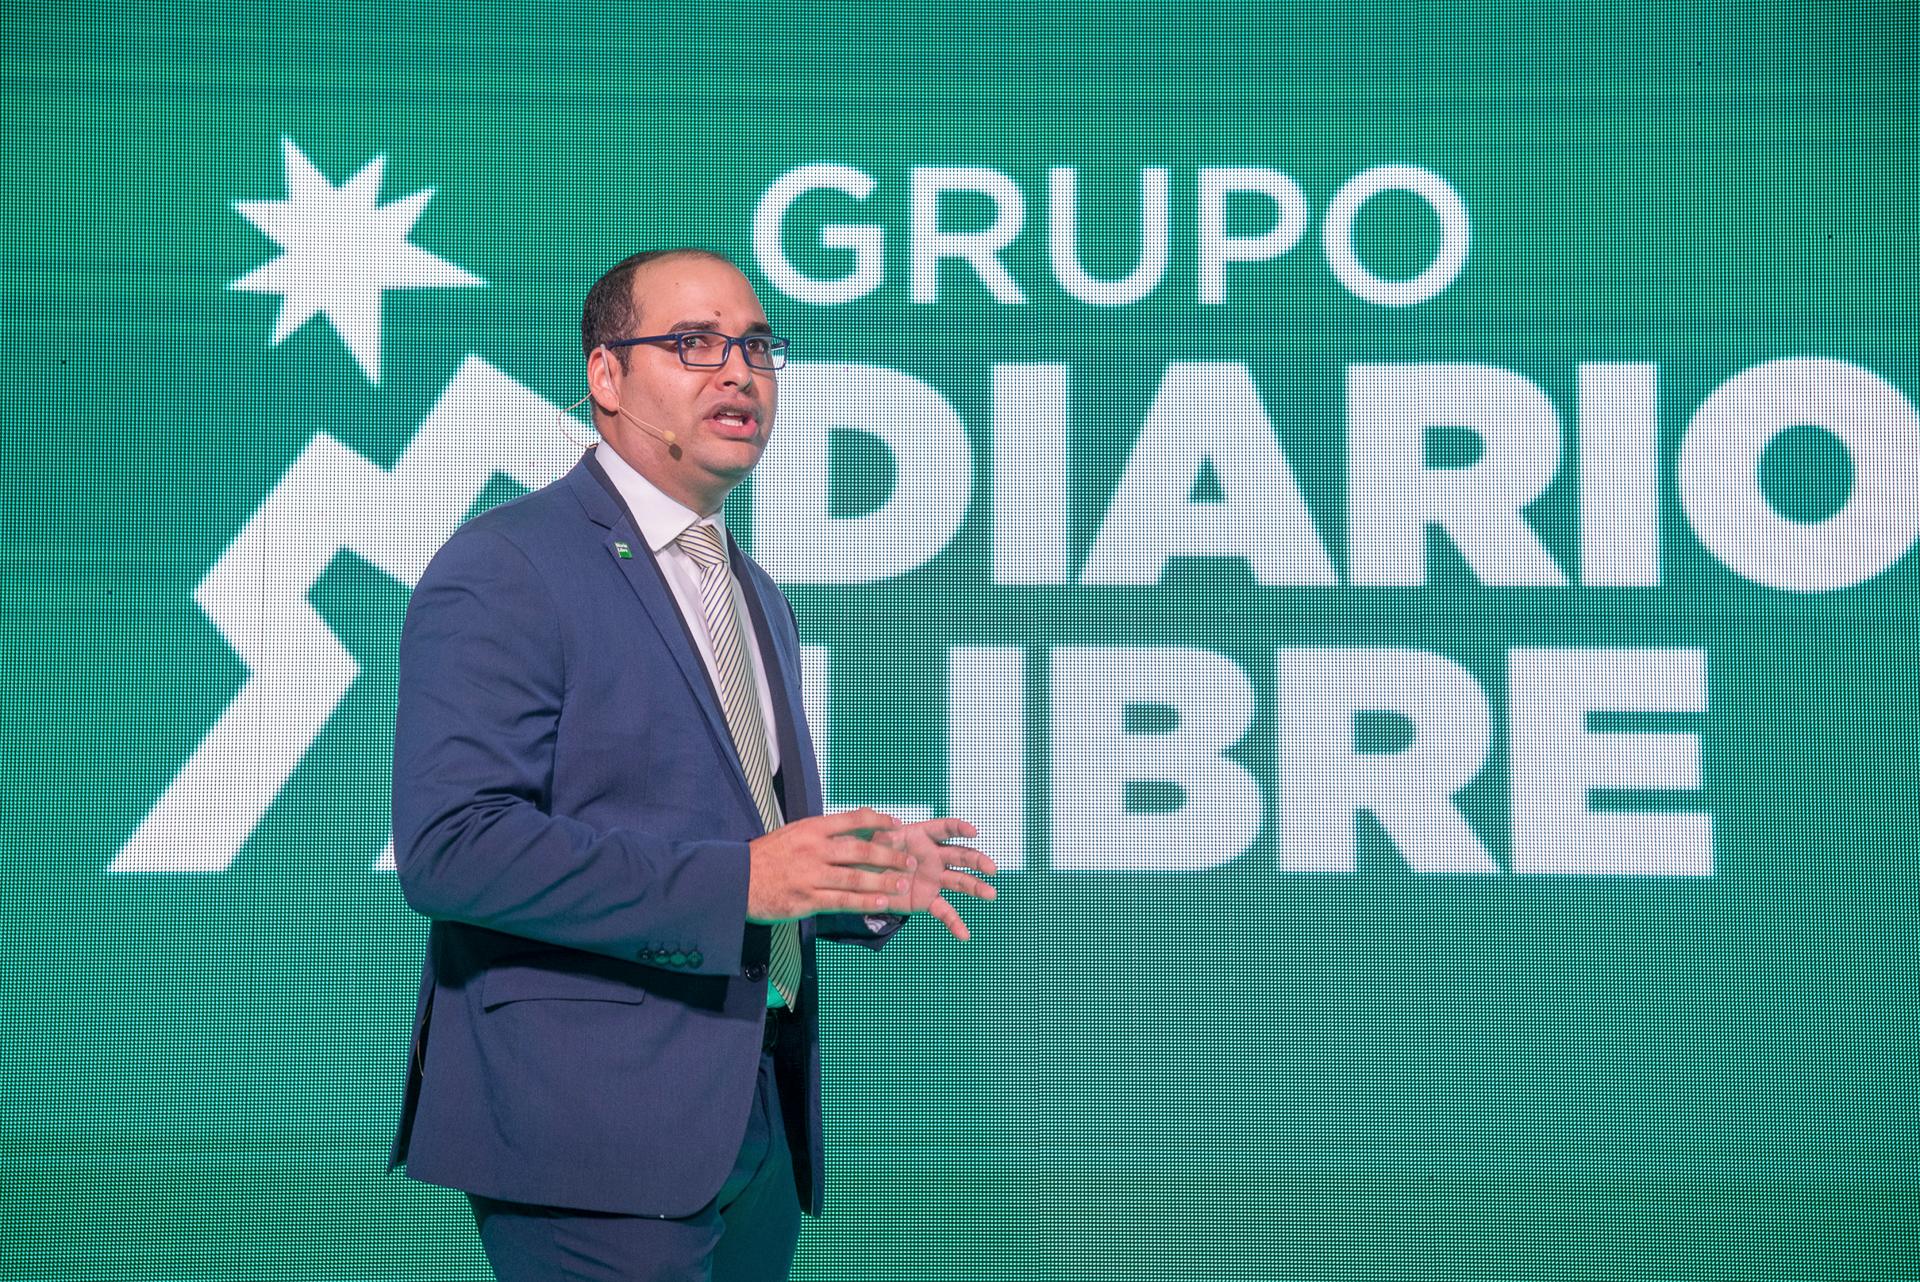 Víctor Gómez Portorreal, VP de operaciones de Diario Libre